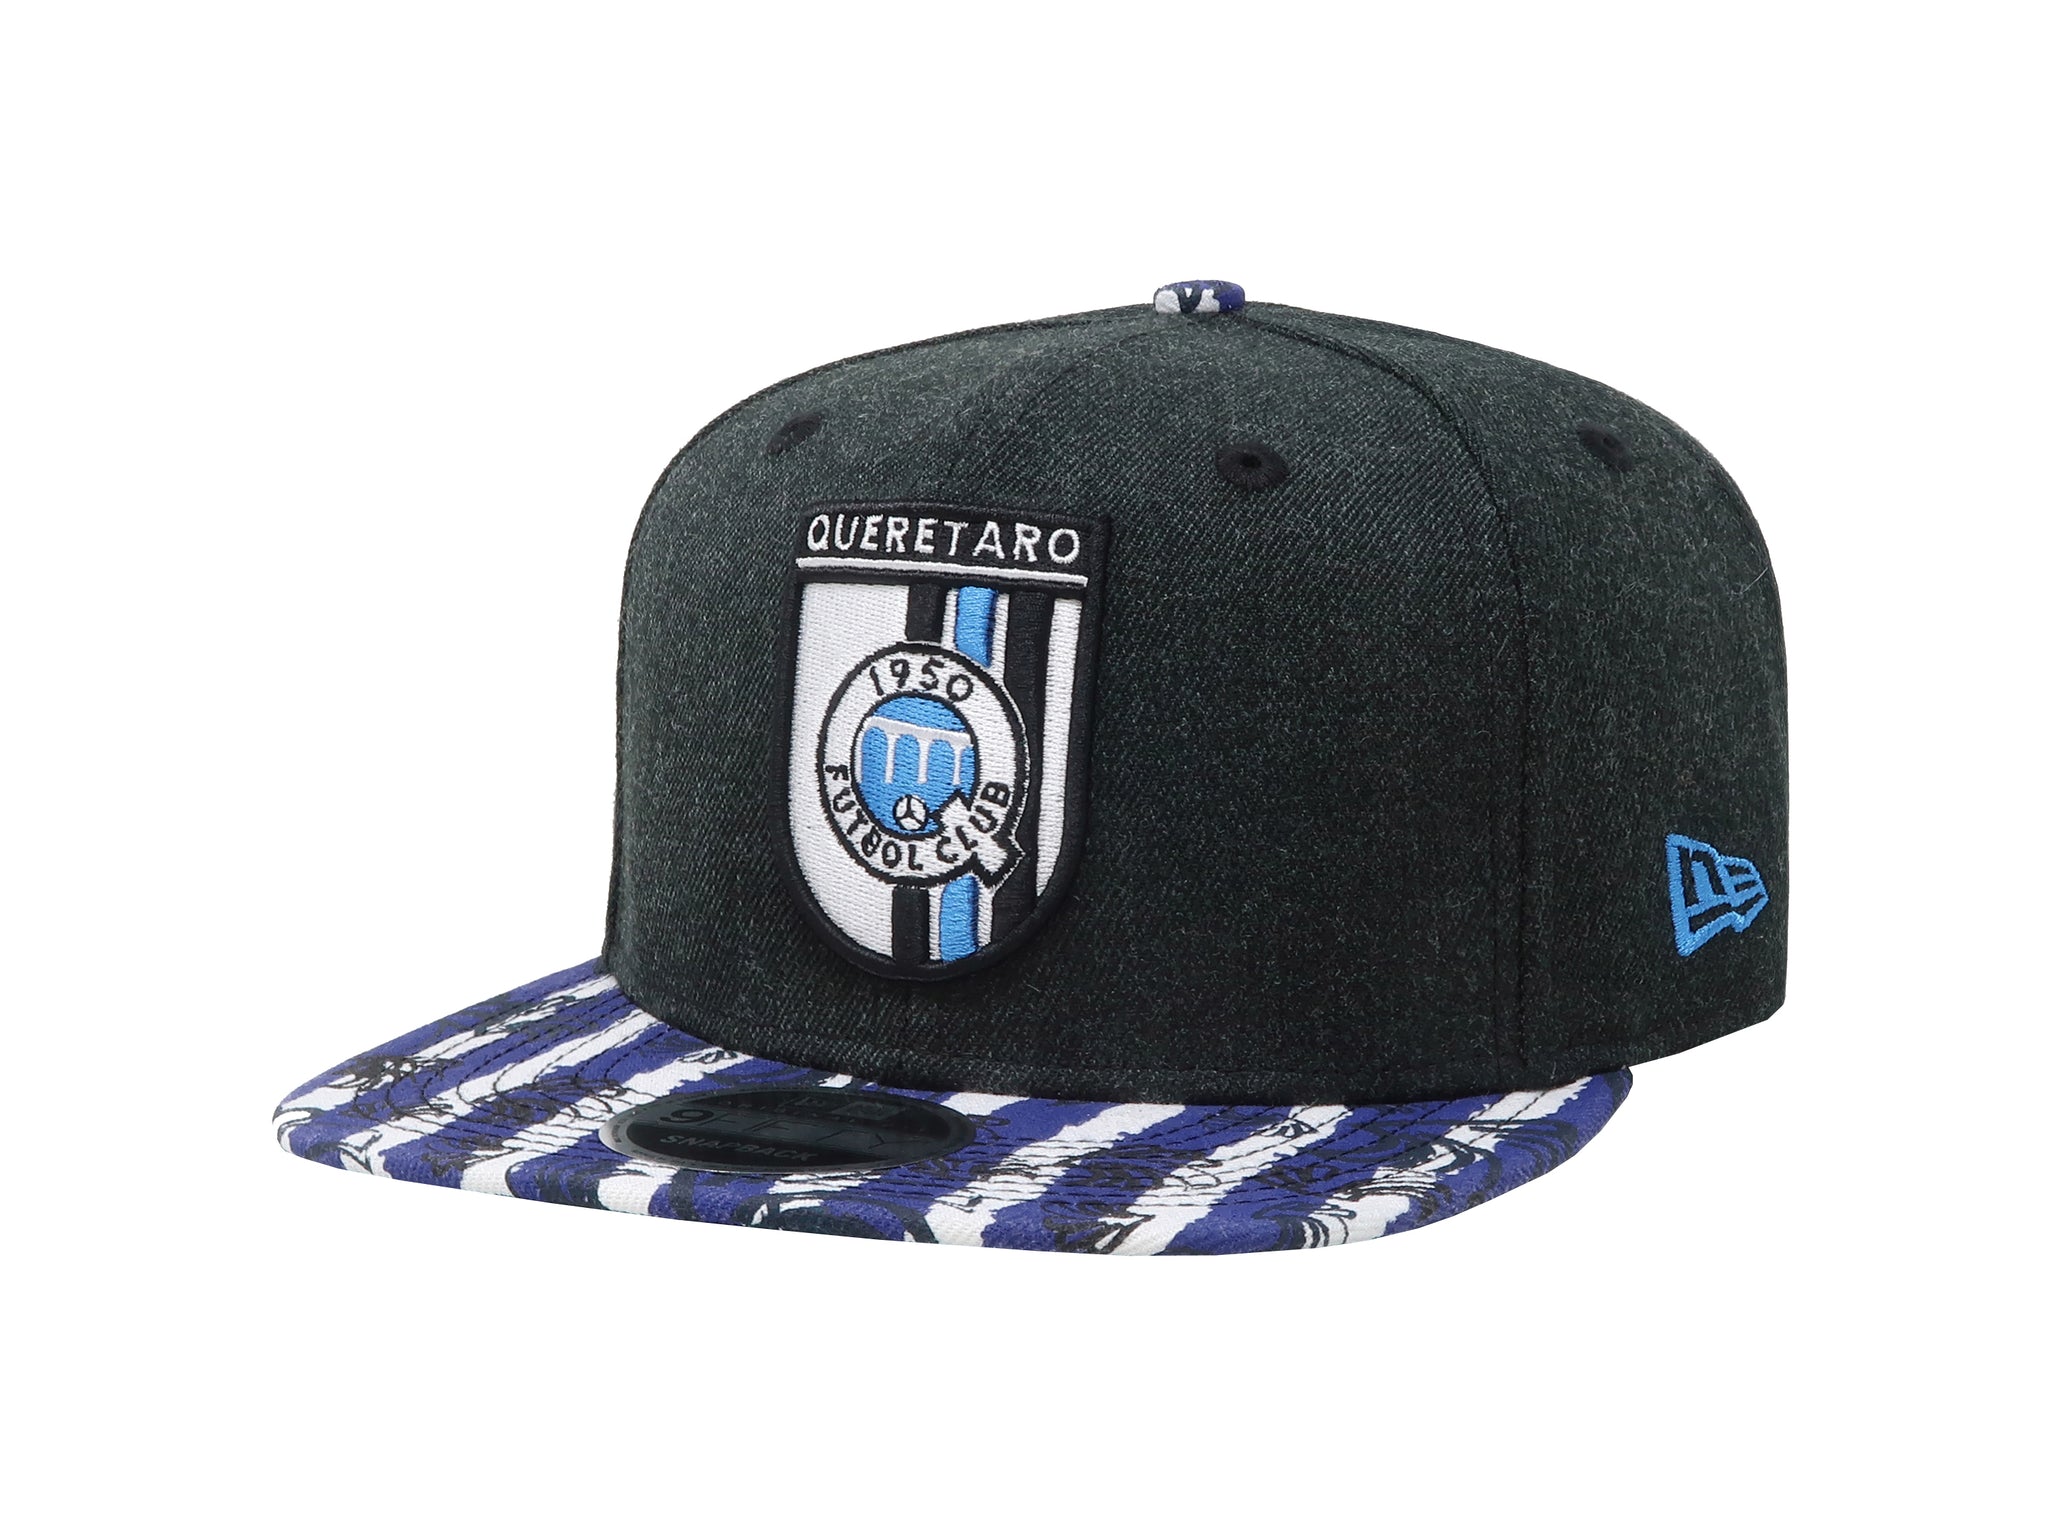 New Era 9Fifty Men's Los Gallos Queretaro Futbol Club Soccer Black/Blue SnapBack Cap